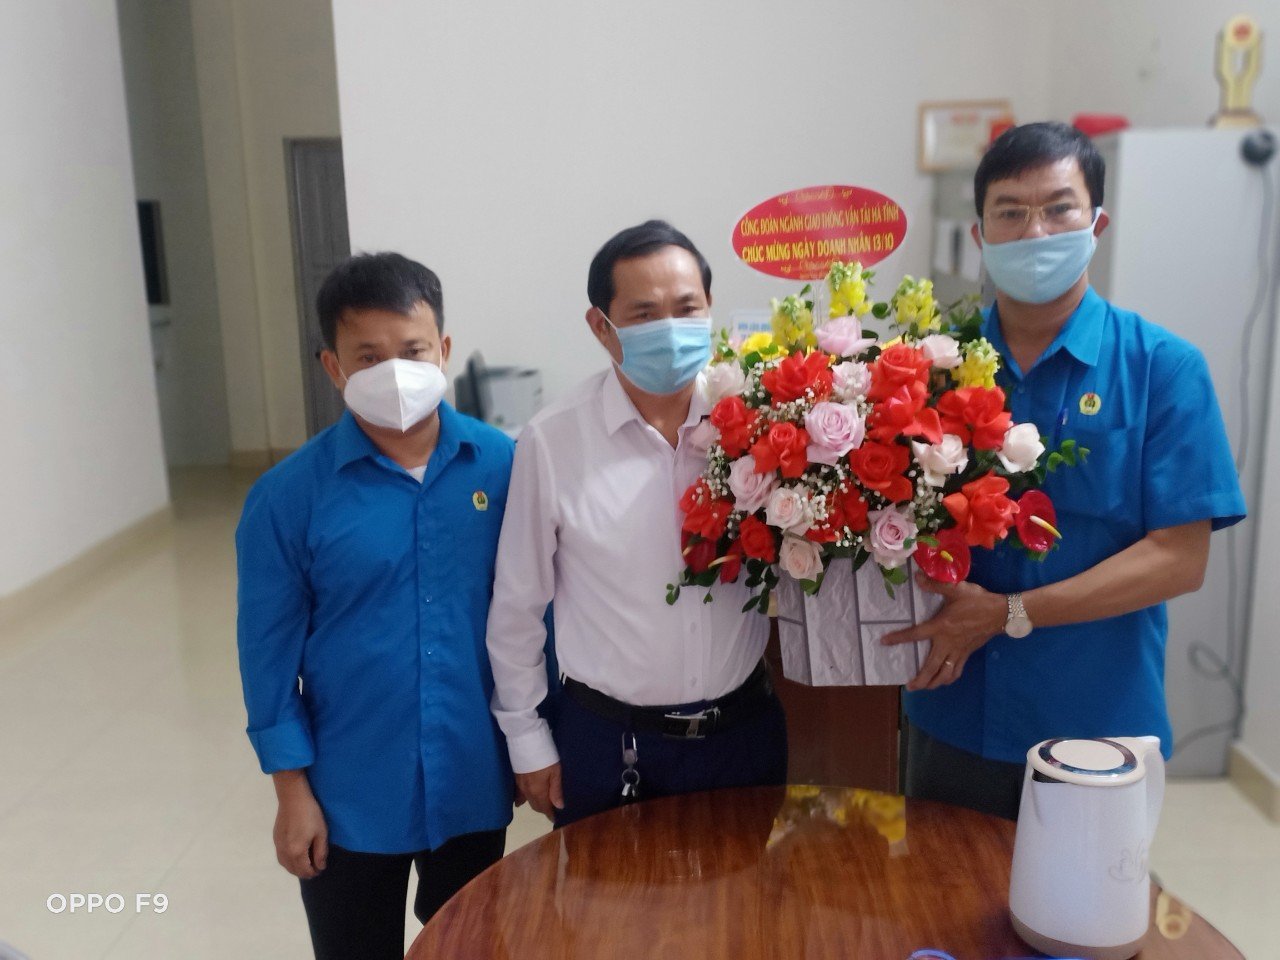 Trong các ngày 11 - 12/10/2021, Công đoàn ngành Giao thông vận tải đã đi động viên, thăm hỏi, chia sẽ và tặng hoa, quà chúc mừng các doanh nghiệp có tổ chức công đoàn trực thuộc nhân dịp kỷ niệm 17 năm Ngày Doanh nhân Việt Nam (13/10/2004 - 13/10/2021).